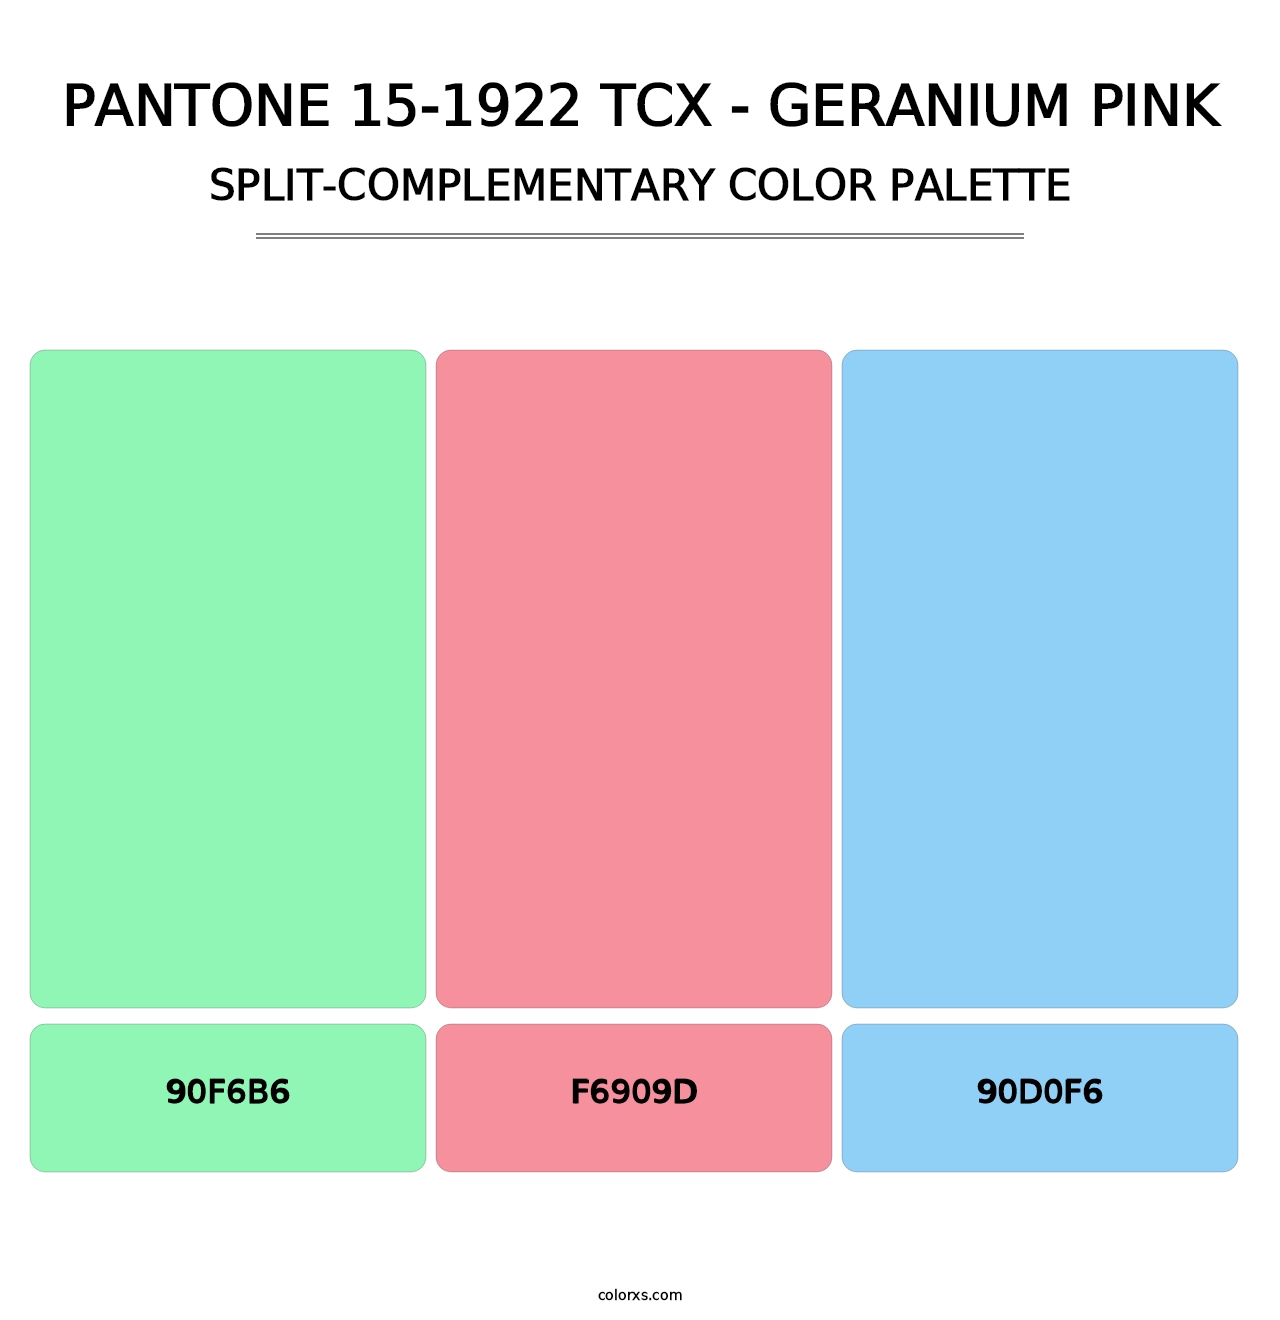 PANTONE 15-1922 TCX - Geranium Pink - Split-Complementary Color Palette